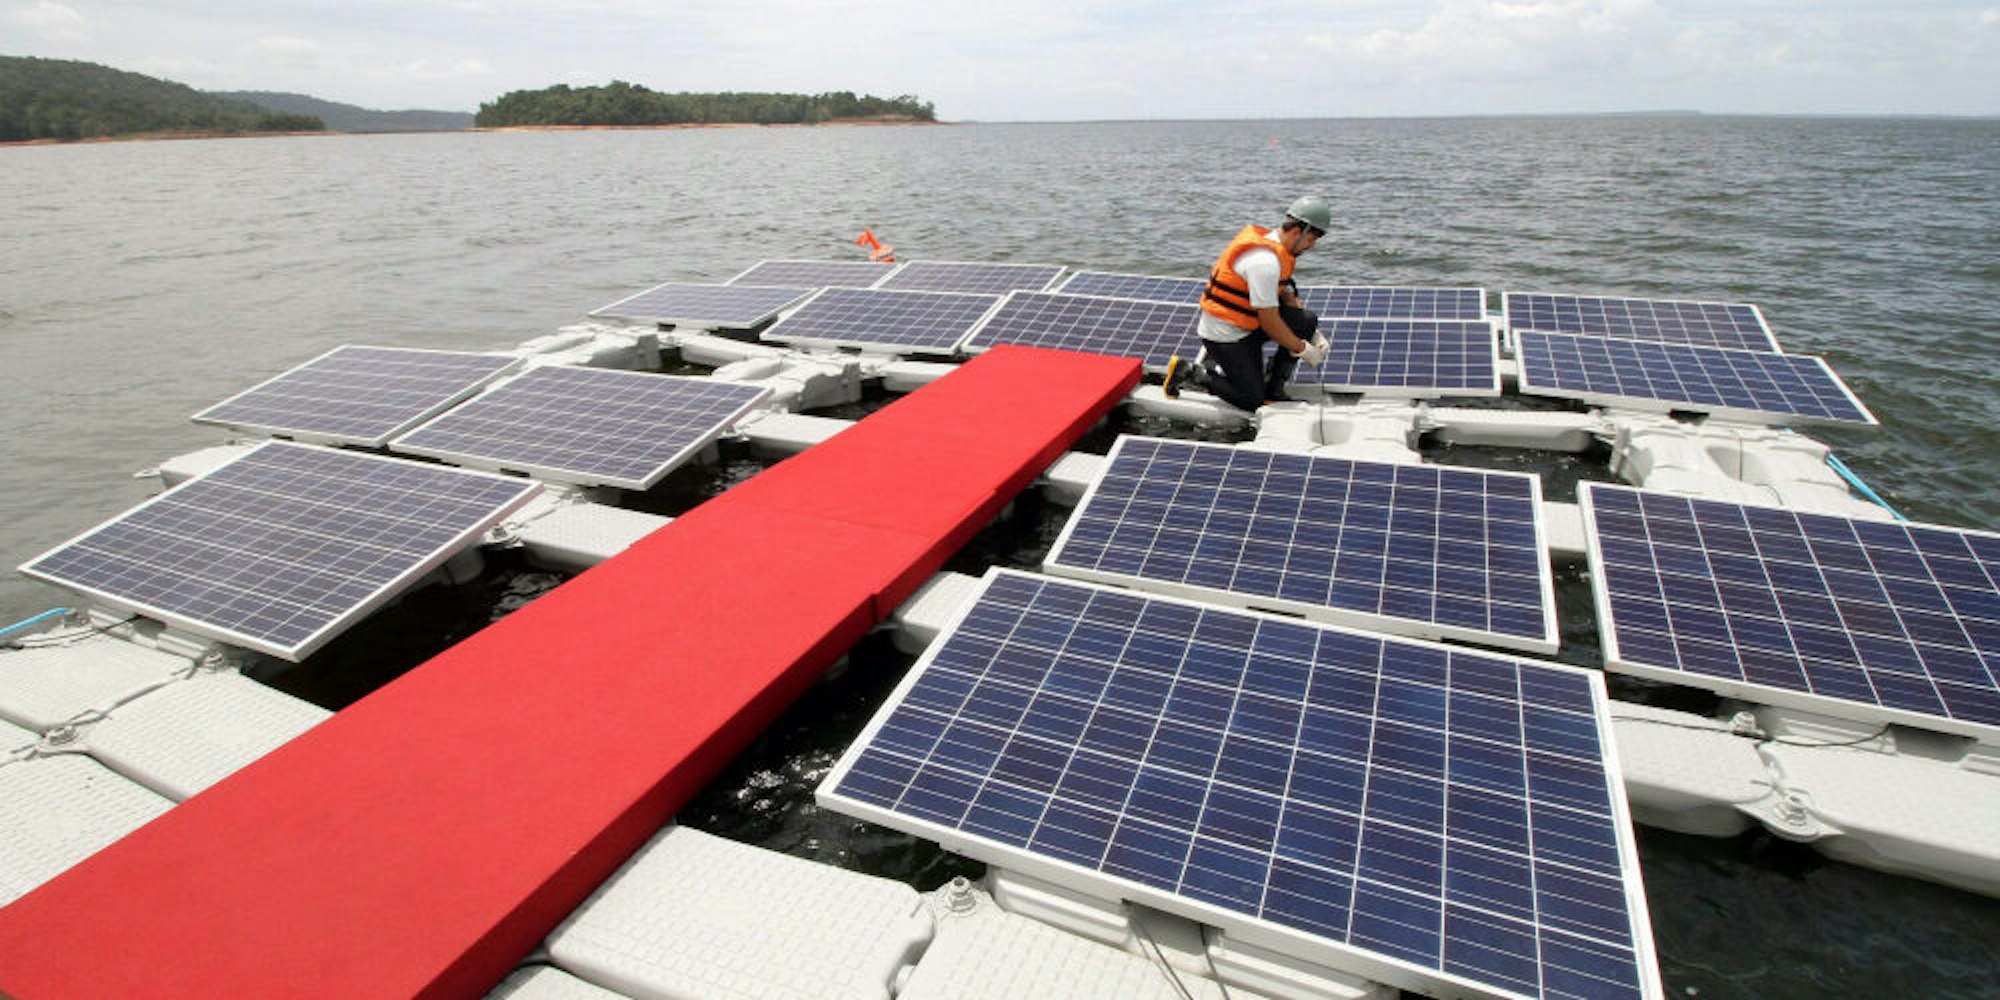 Ob schwimmende Solaranlagen wie im brasilianischen Balbina  auch auf der Großen Dhünn-Talsperre eingesetzt werden könnten, wäre noch zu klären. Aqualon 2.0 hält es für denkbar